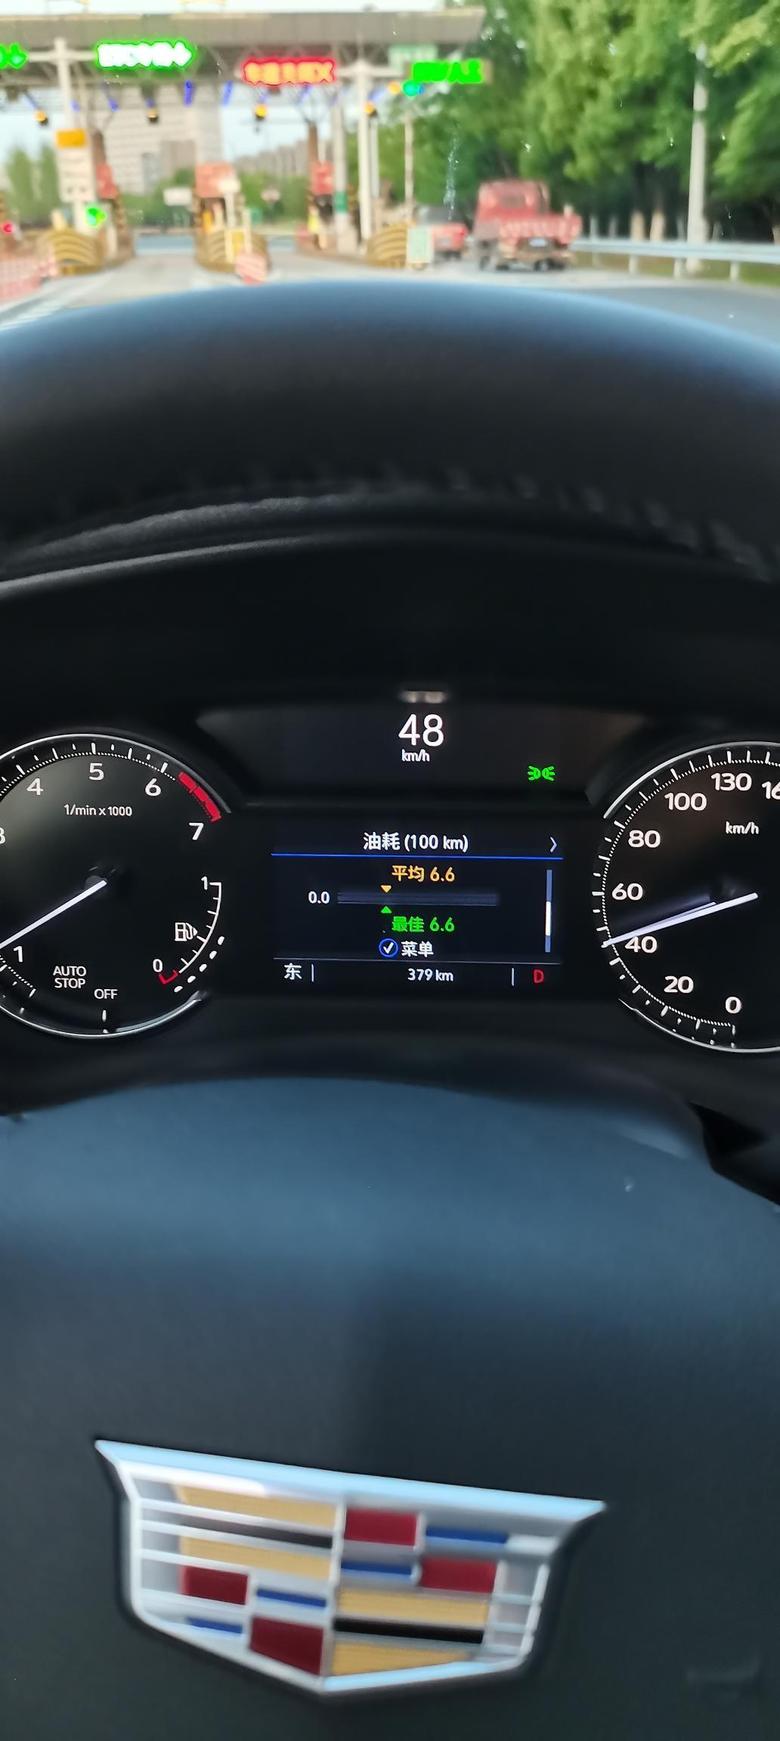 凯迪拉克xt4 刚提新车显示油耗还不错的，高速6.2，城市7.0（目前个人感觉60和110匀速最省油吧），先找找车的特性